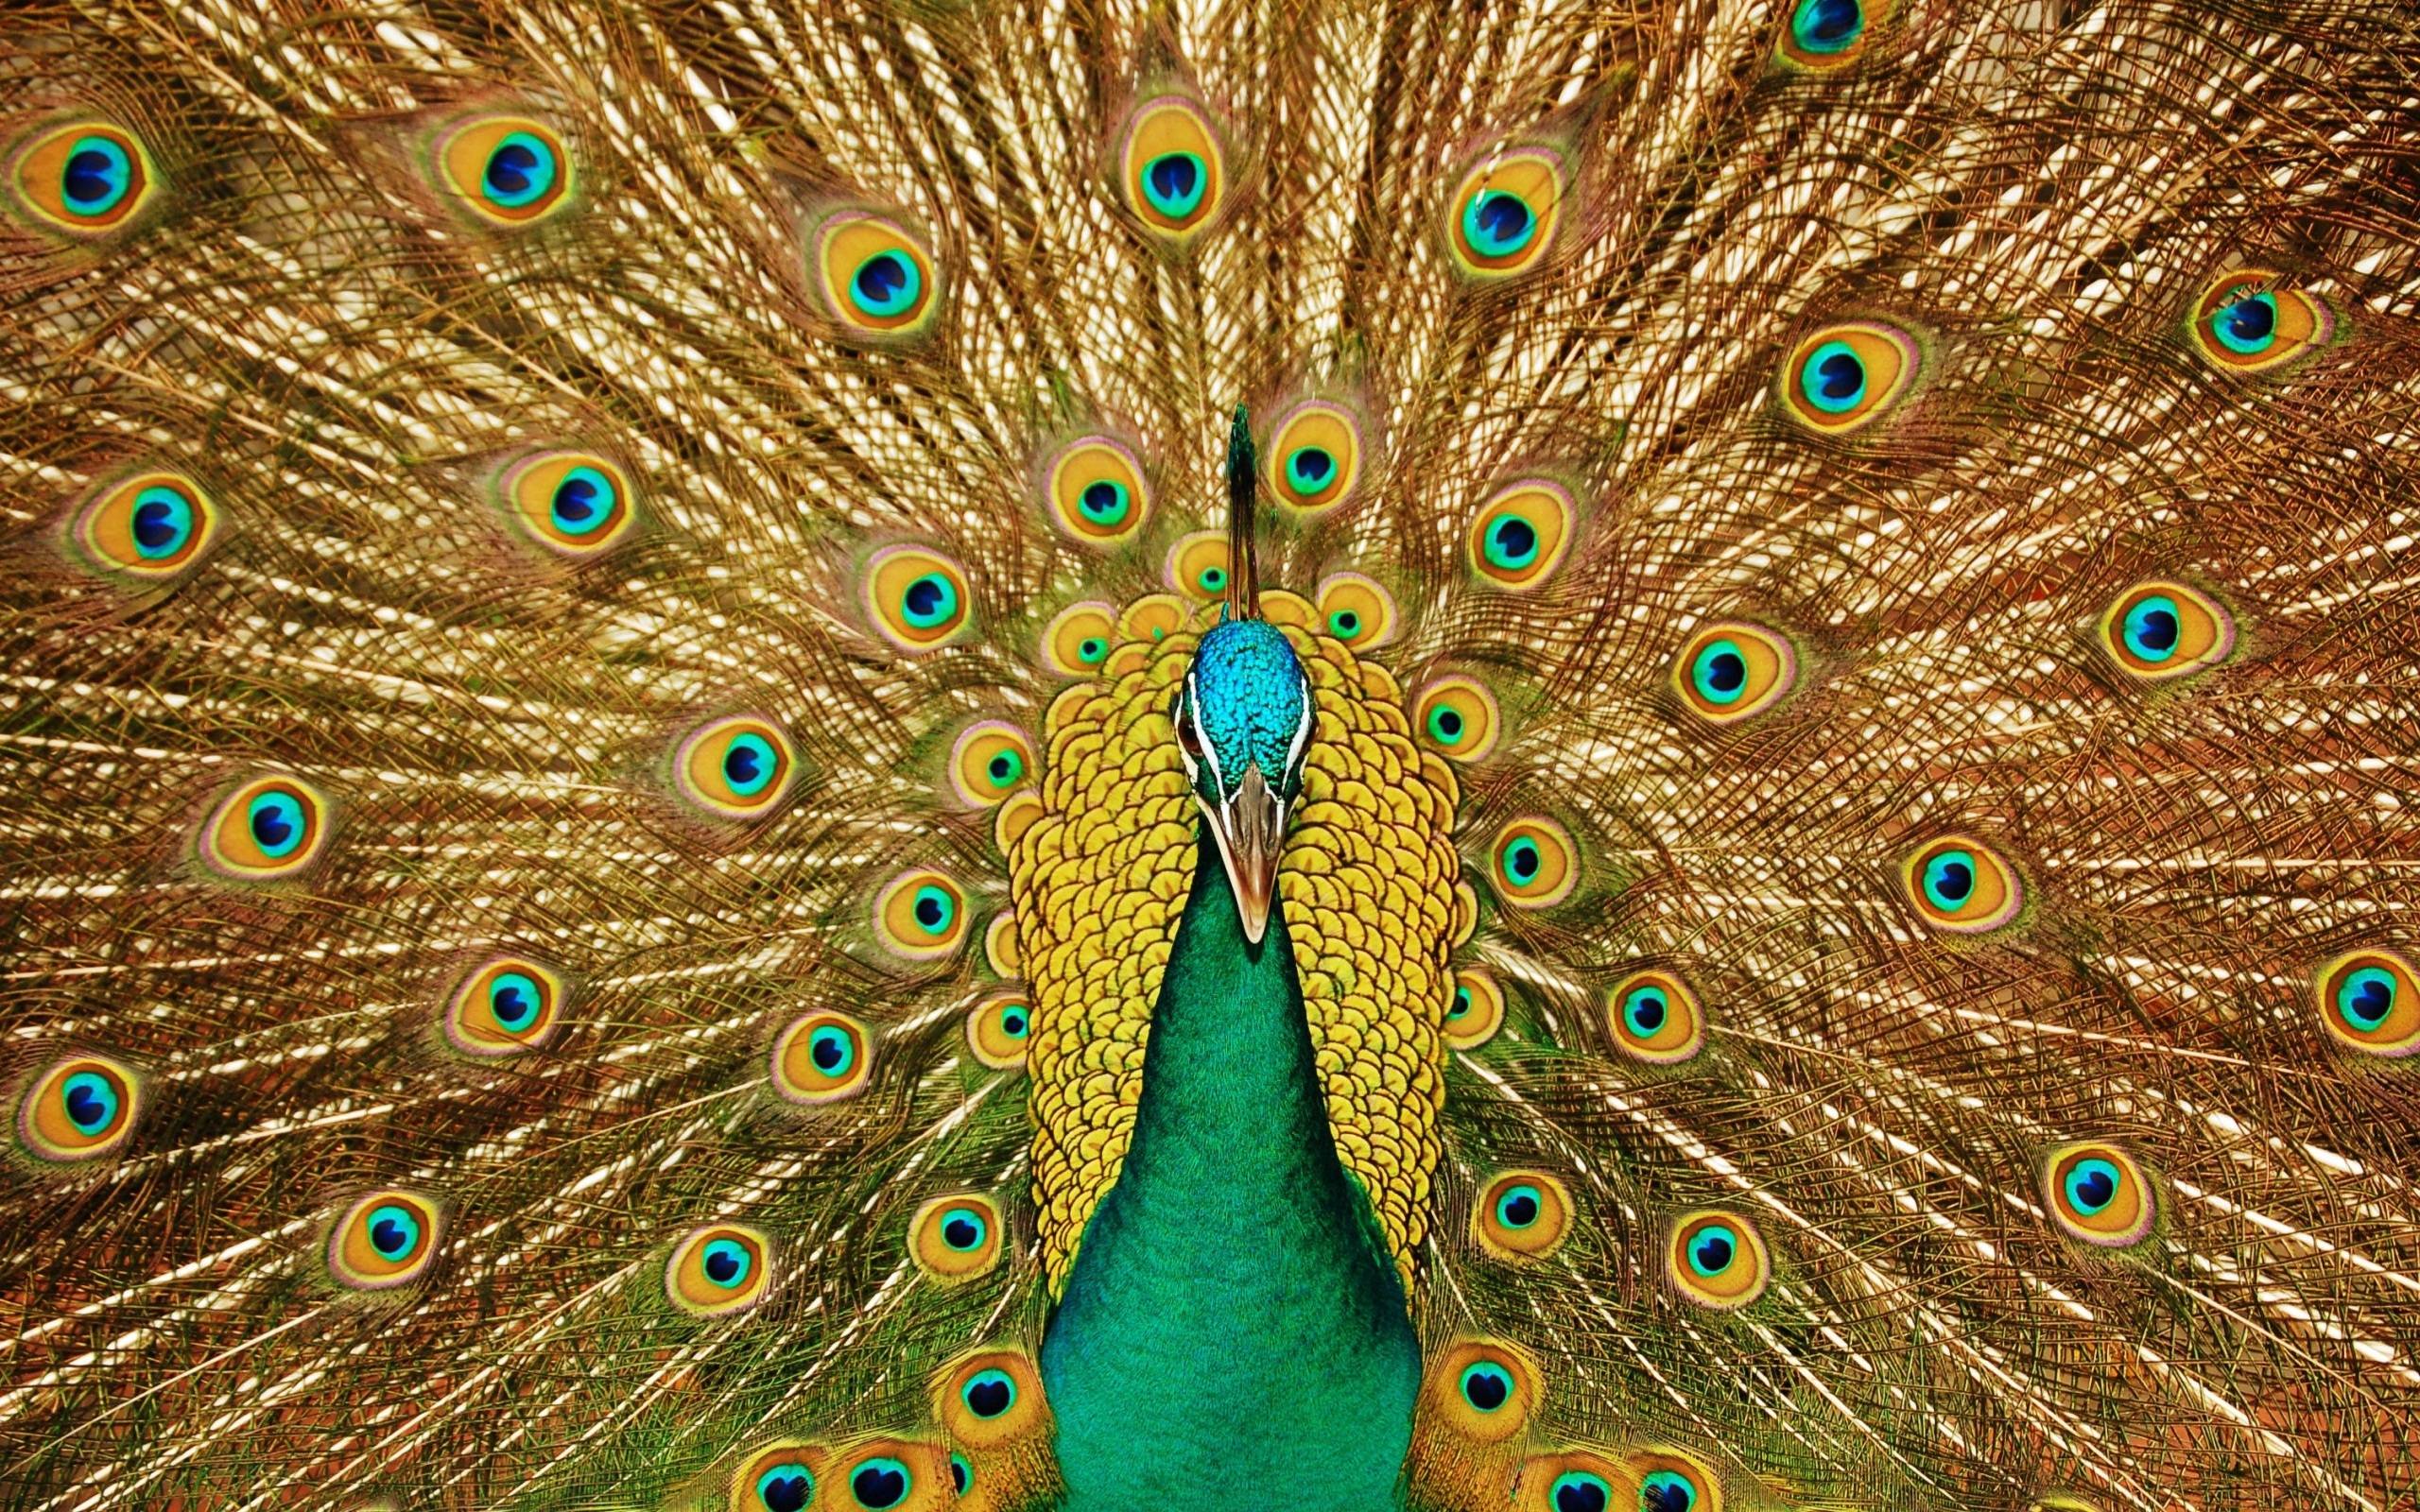 Peacock Wallpaper